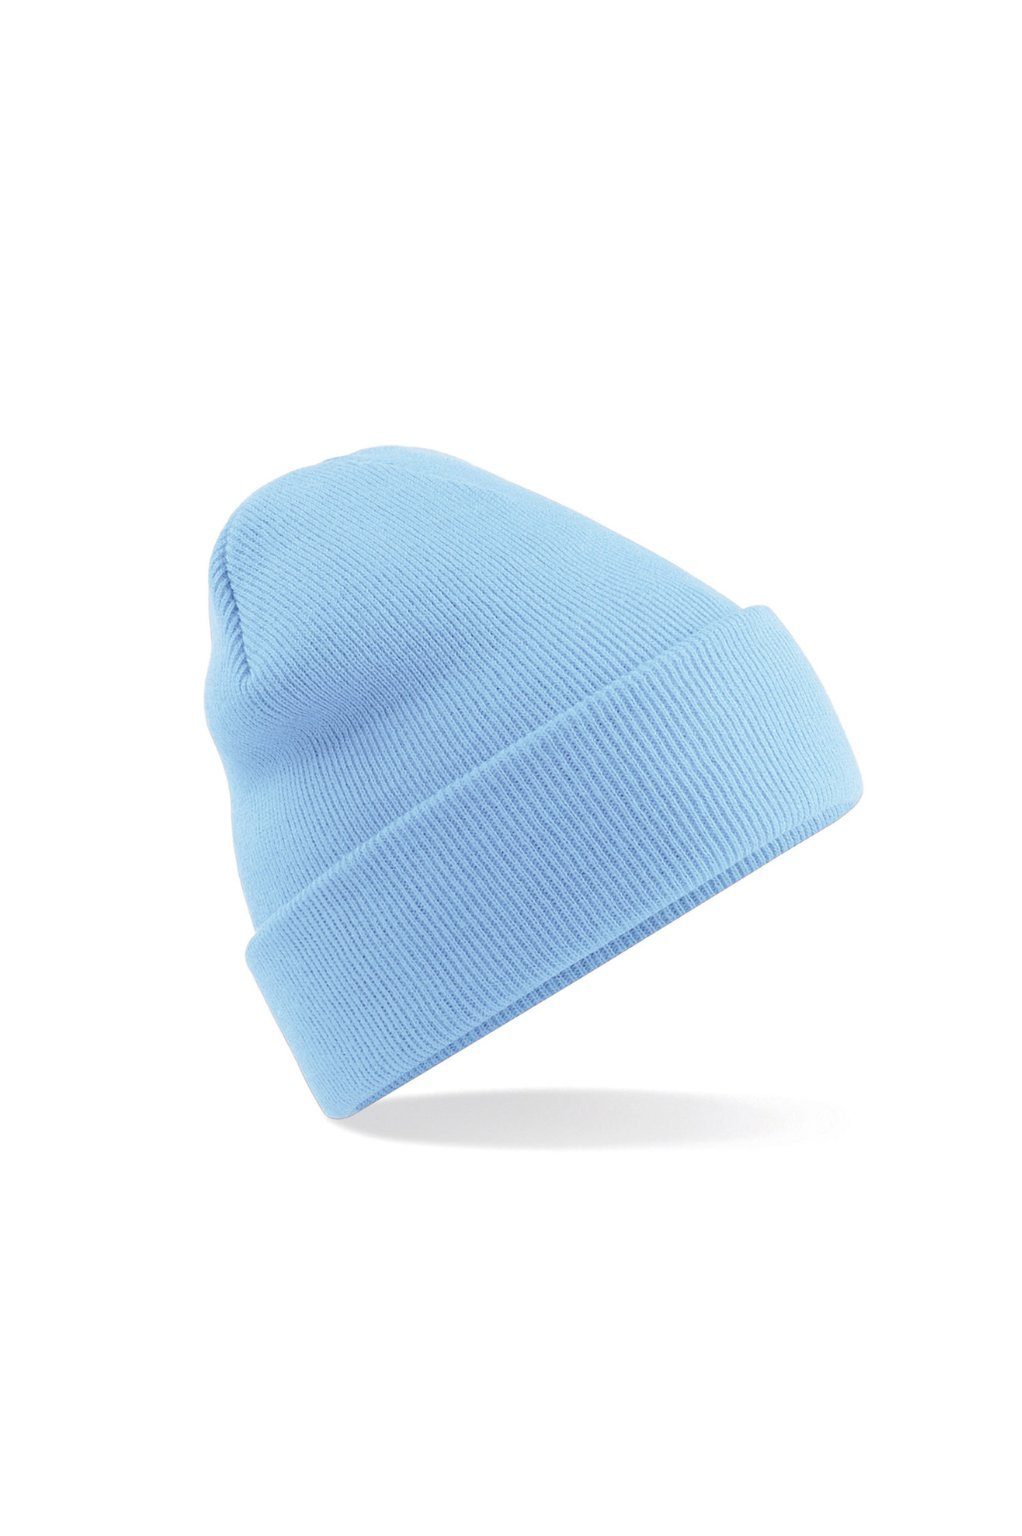 ESMINA Strickmütze Comfy Beanie - seidenweich & extrem anschmiegsam durch Soft Touch, wärmend ocean blue